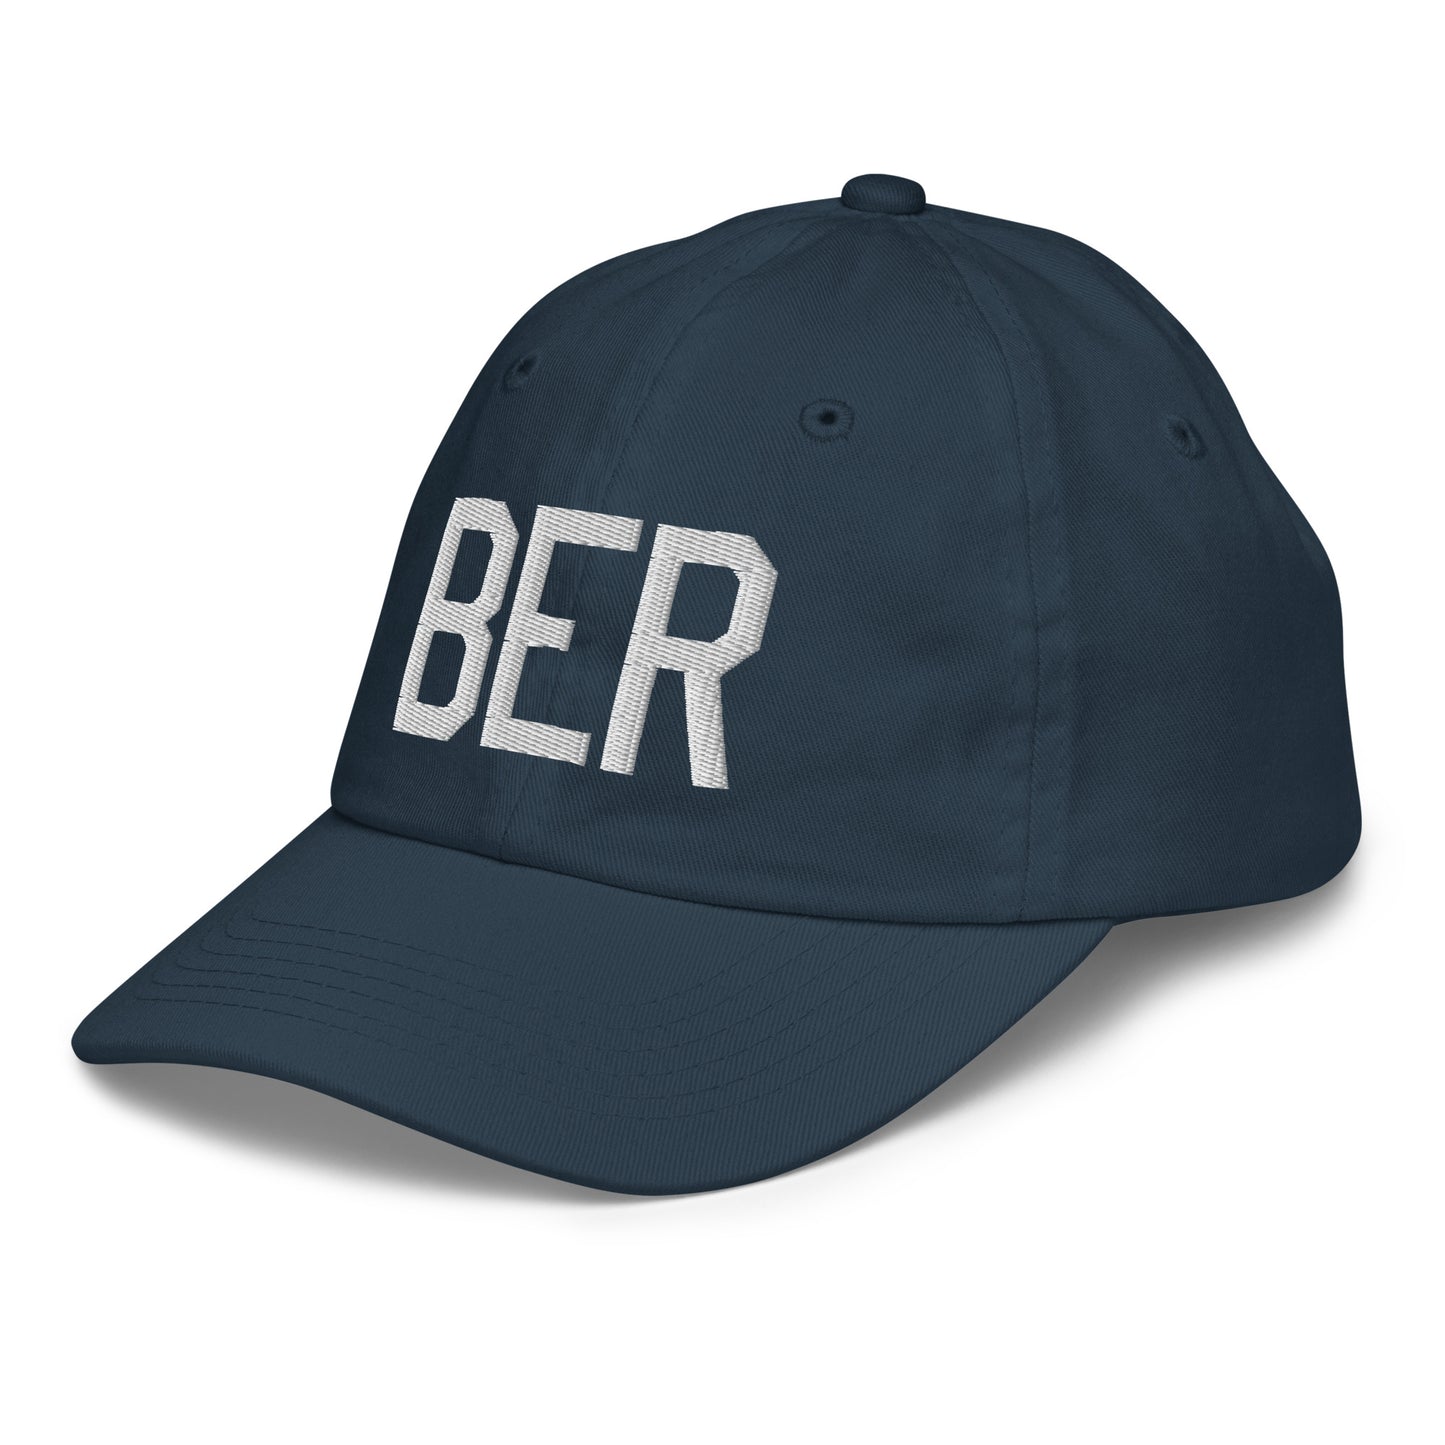 Airport Code Kid's Baseball Cap - White • BER Berlin • YHM Designs - Image 16